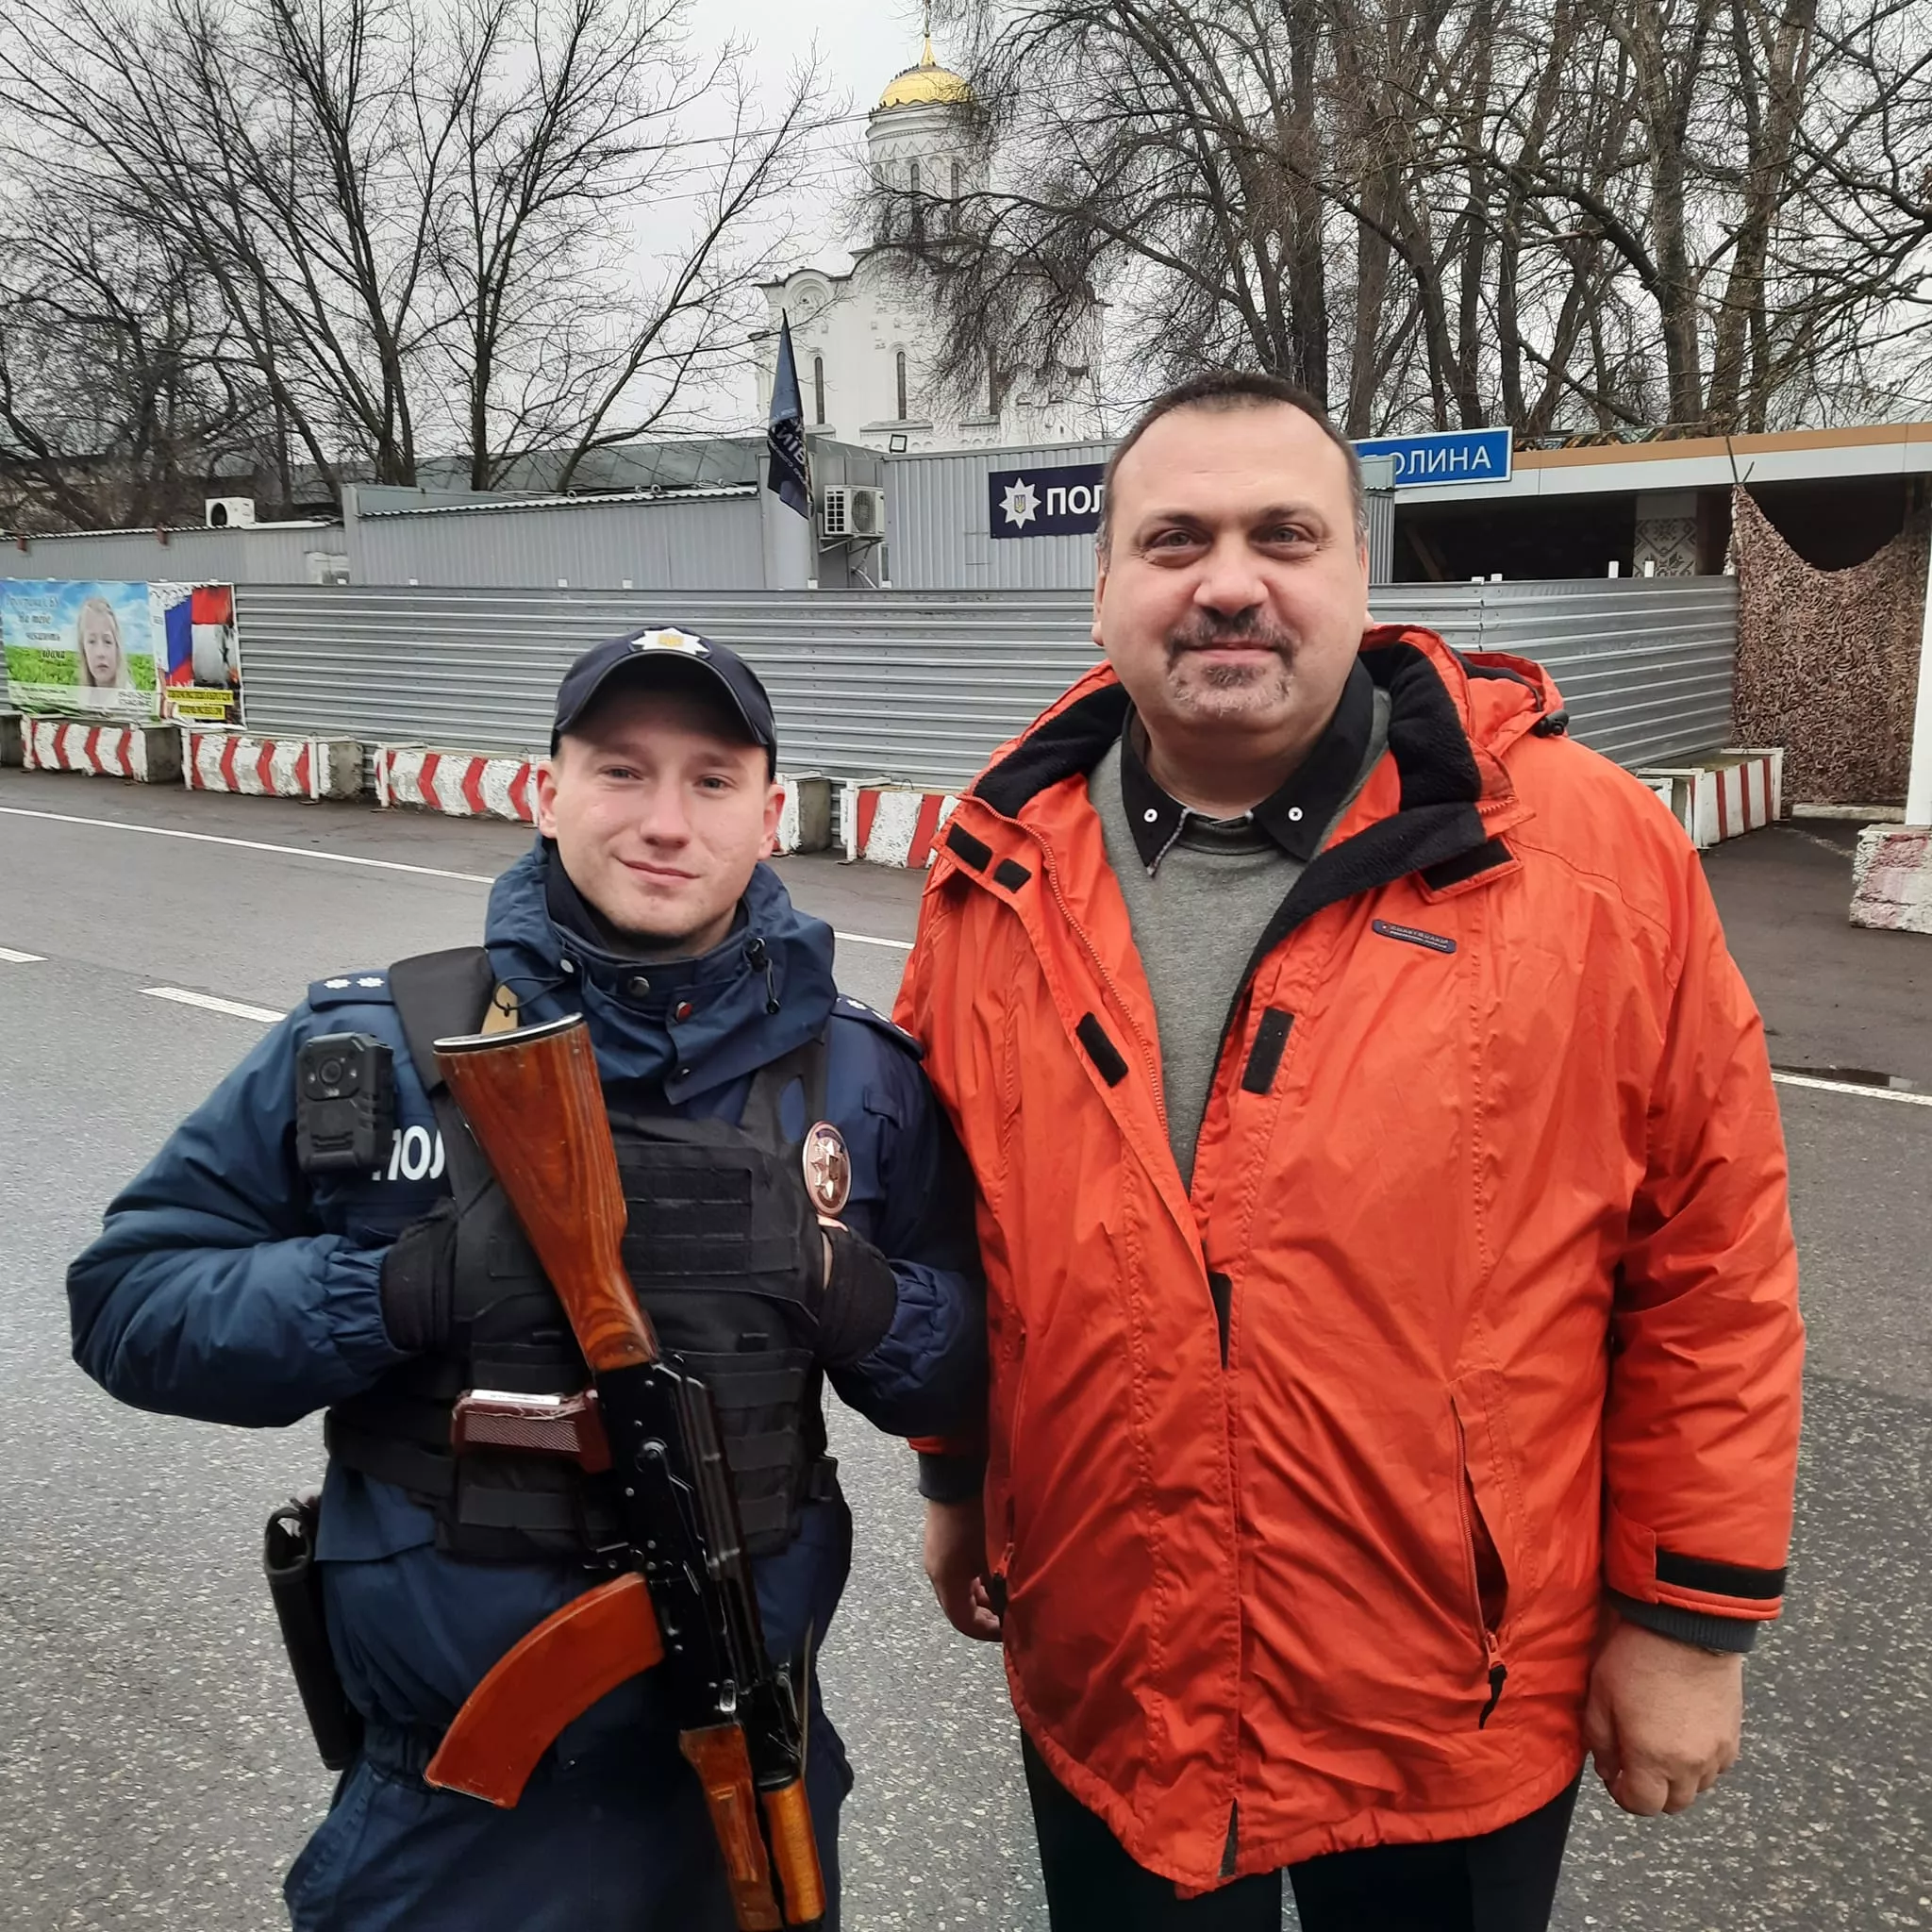 Константин Васенков (слева) и Сергей Сухин (справа). Фото: коллаж "Сегодня"